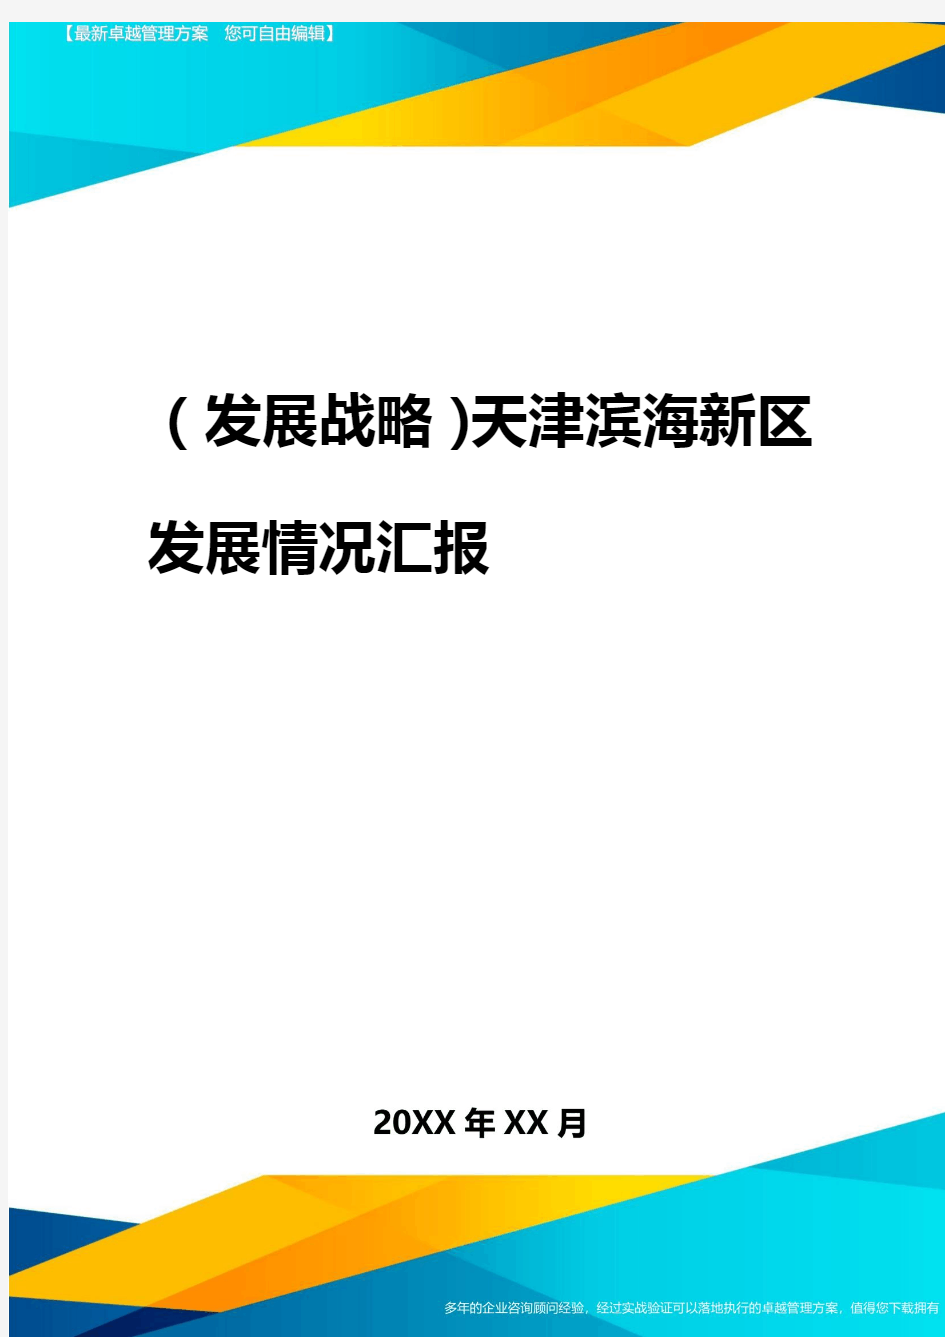 2020年(发展战略)天津滨海新区发展情况汇报